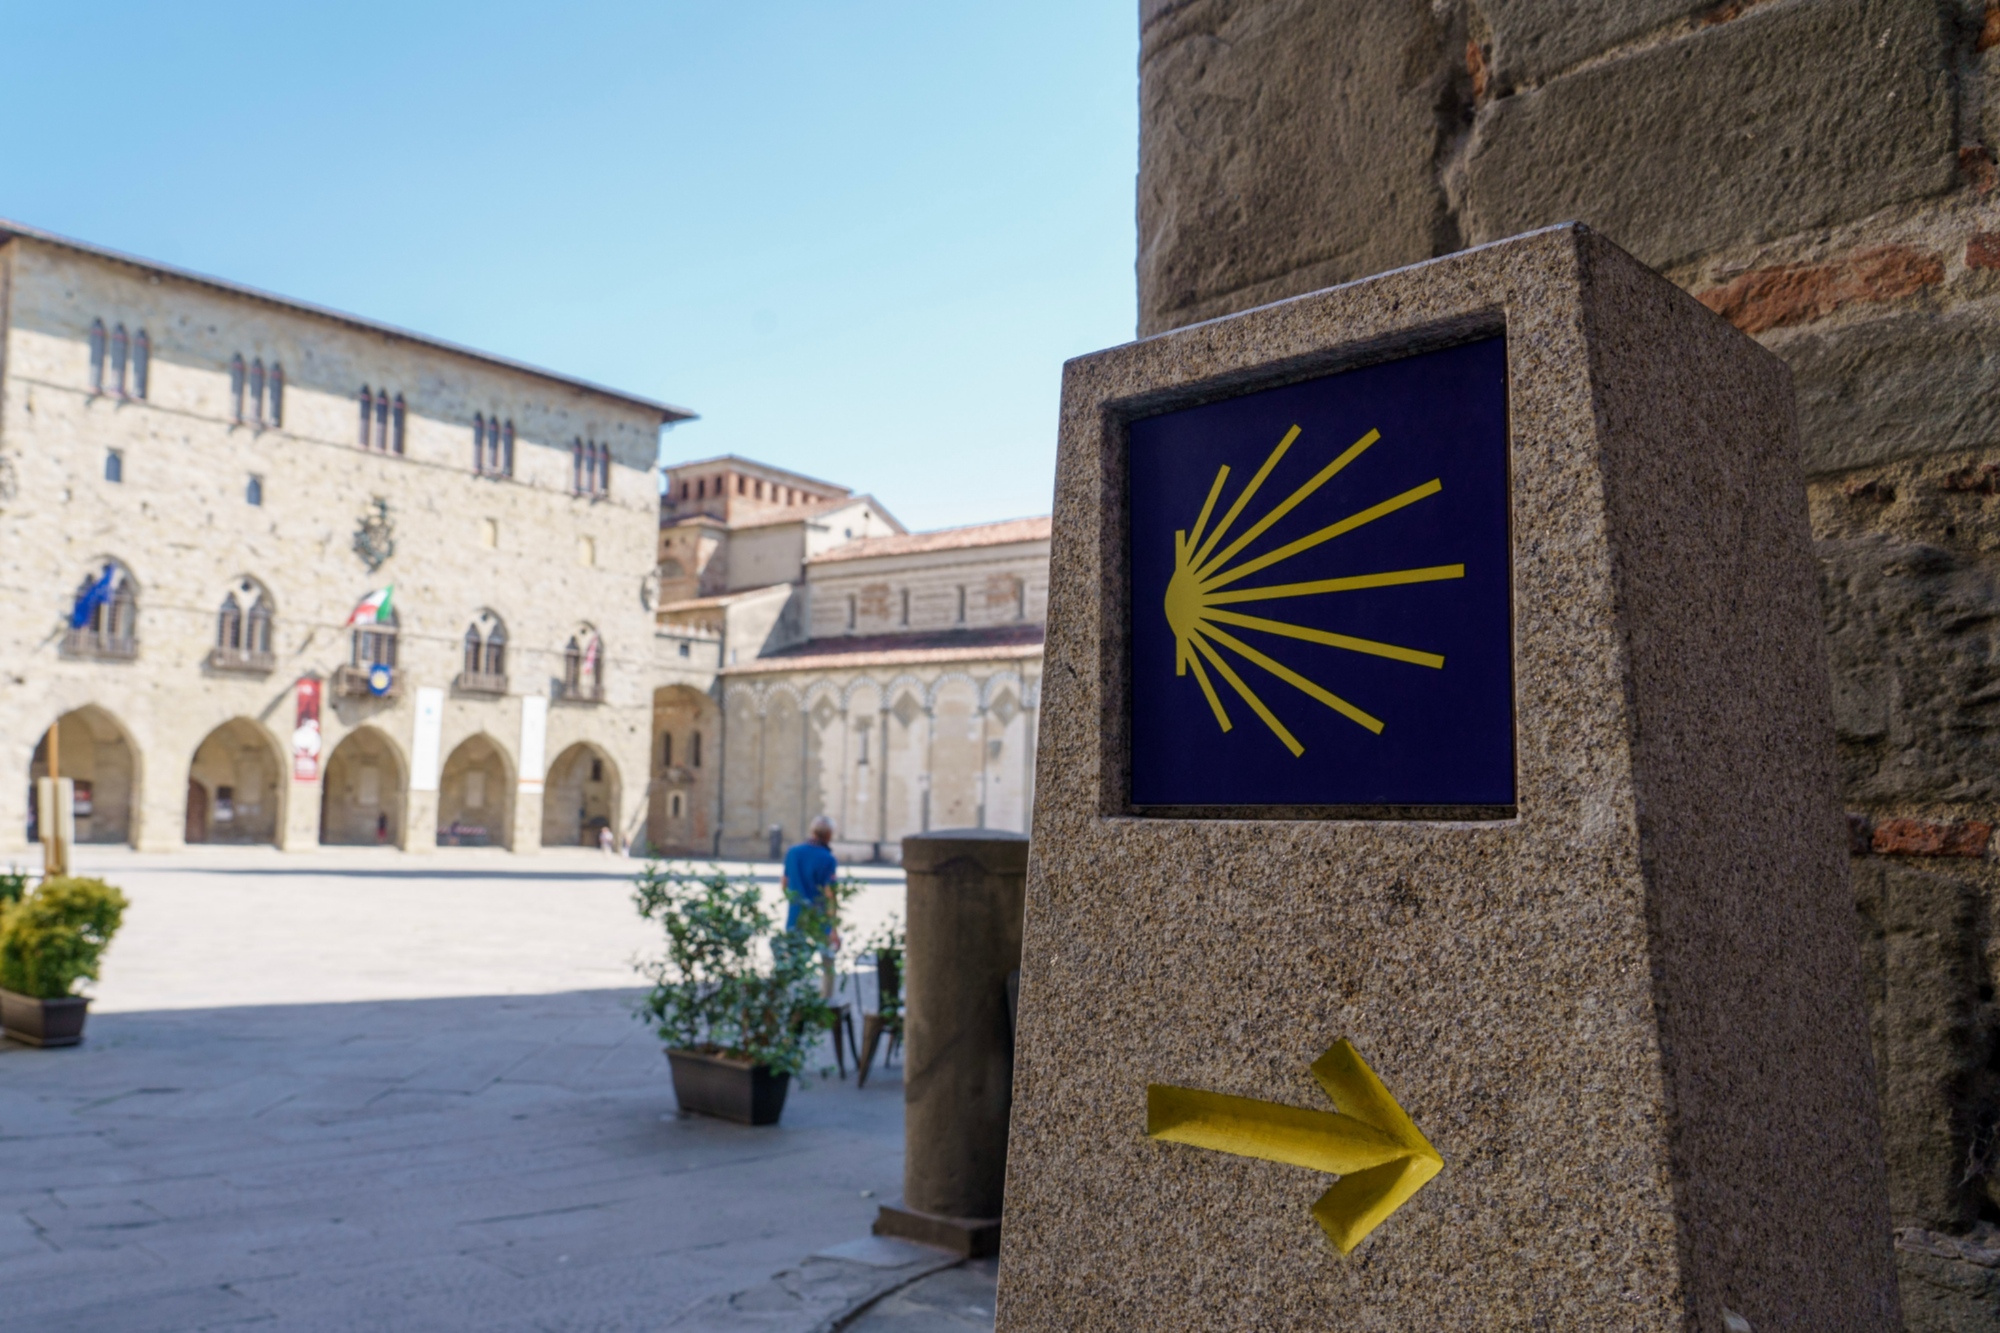 Cippo del Cammino di Santiago in piazza Duomo, Pistoia